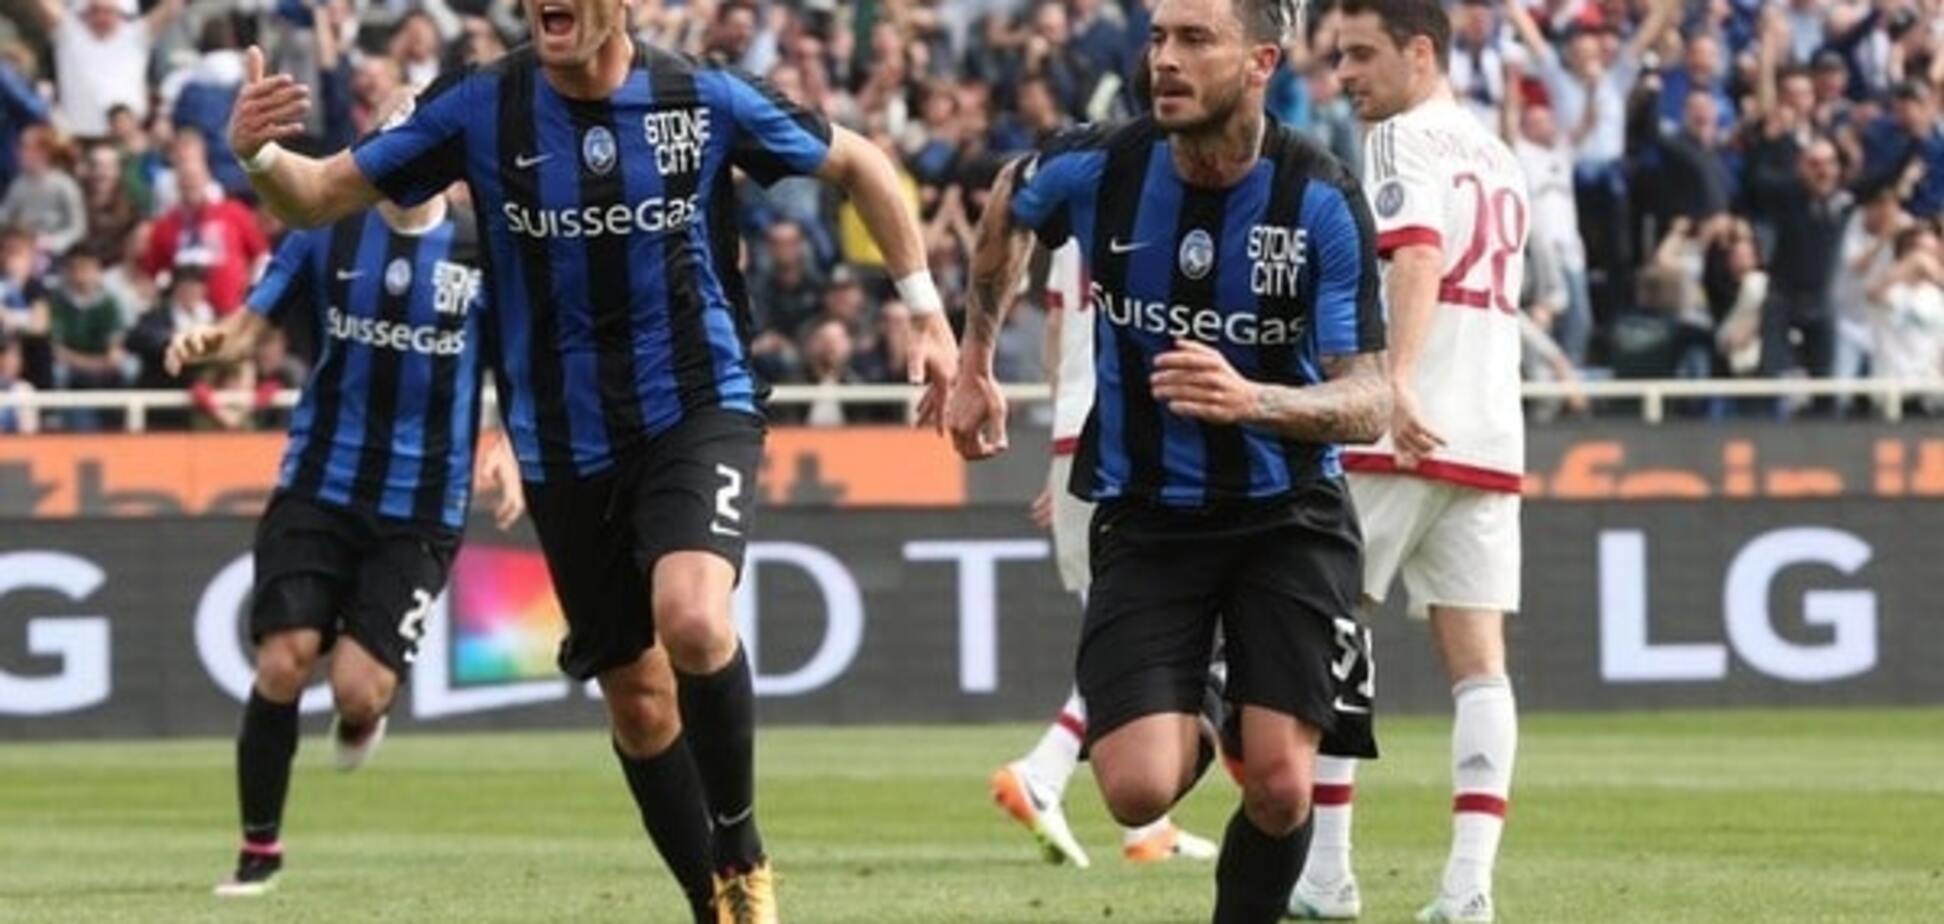 Італійський футболіст забив гол-шедевр 'ножицями' в чемпіонаті Італії: відео моменту